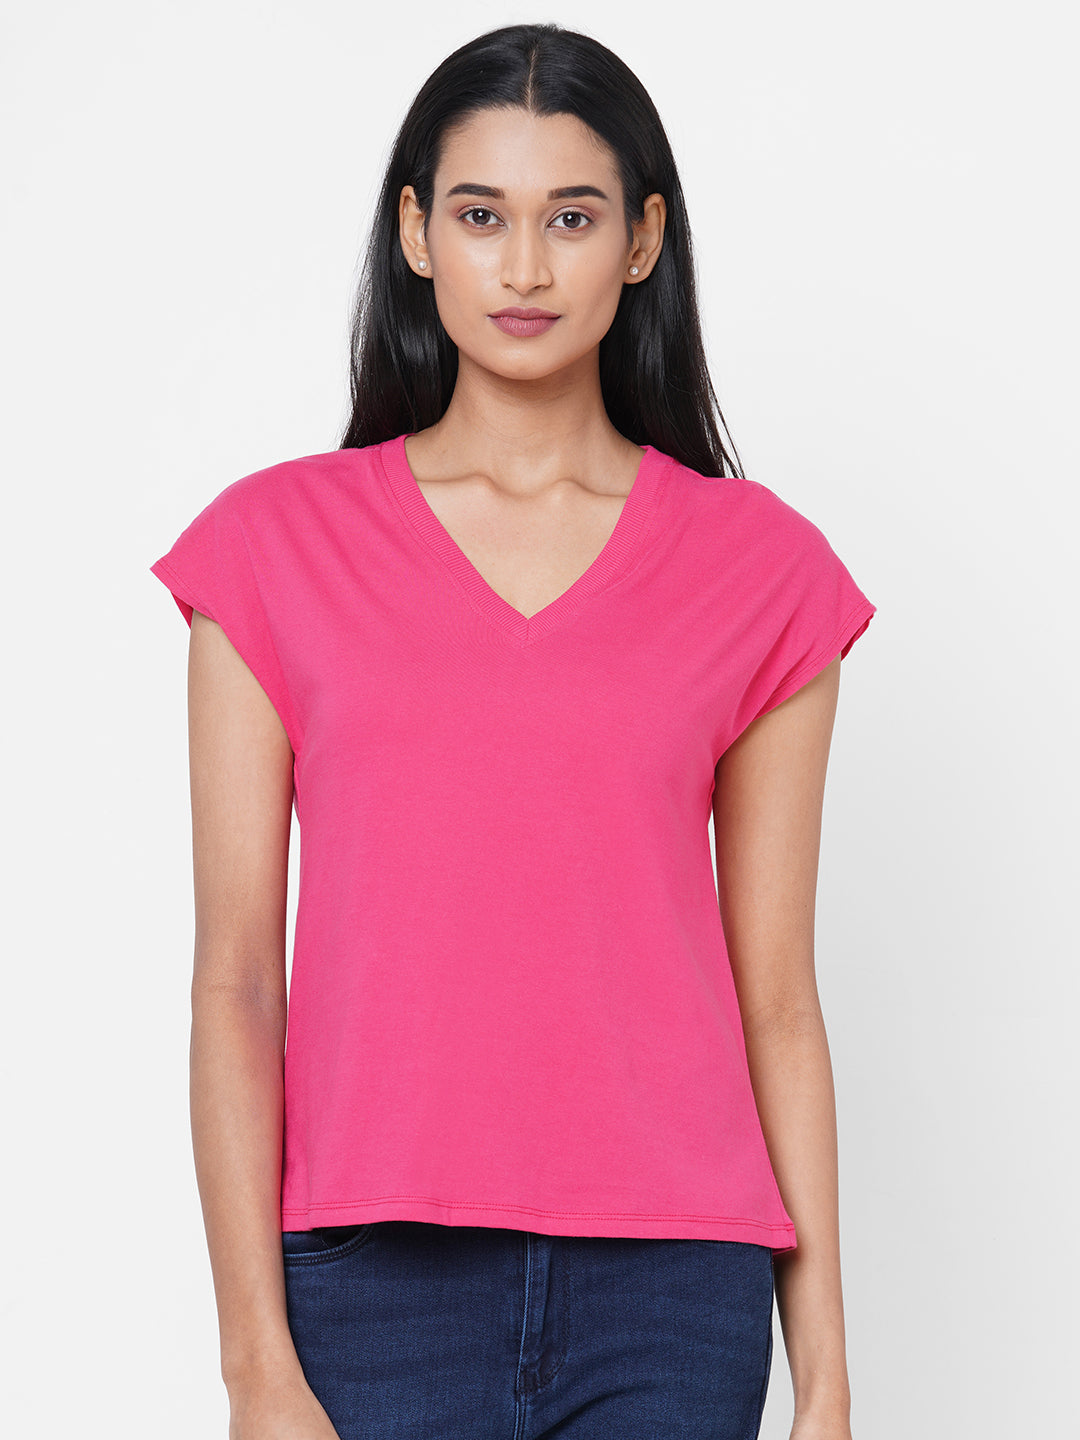 Womens Cotton Deep Pink Slim Fit Tshirt